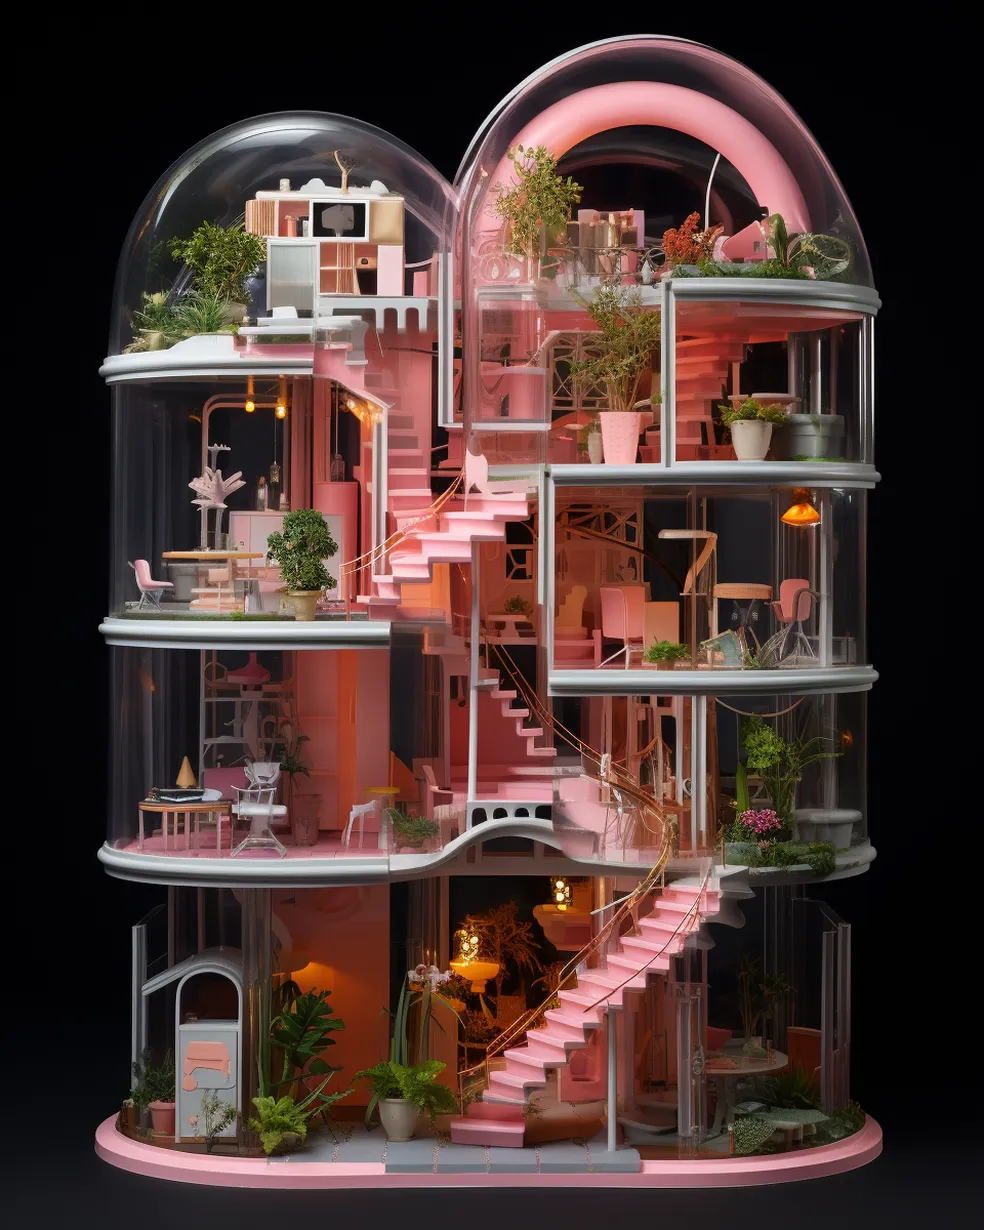 A casa da Barbie projetada por Oscar Niemeyer e outros 4 arquitetos brasileiros renomados